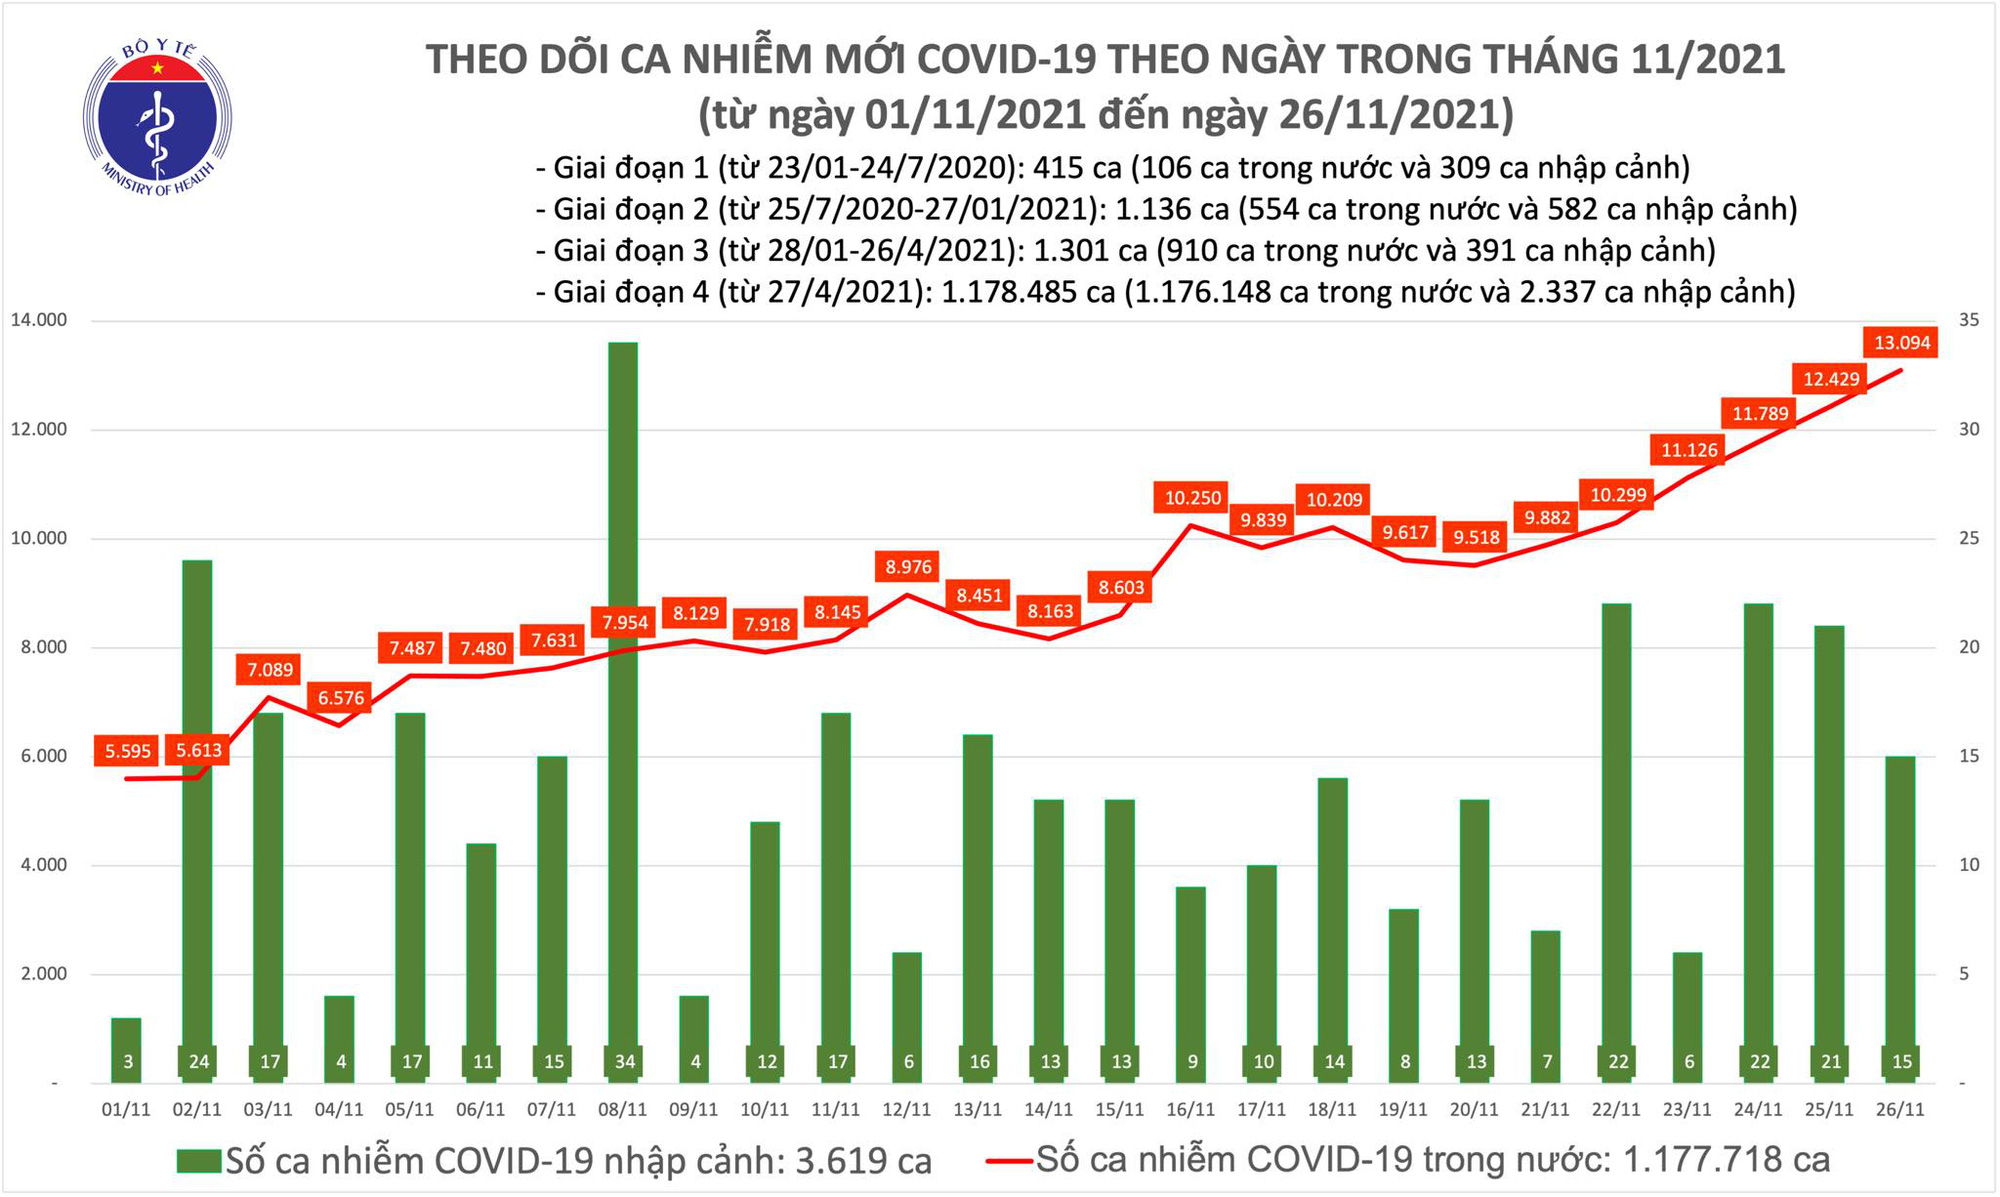 Covid-19 ngày 26/11: Tốc độ tiêm vaccine Covid-19 được đẩy mạnh - Ảnh 1.